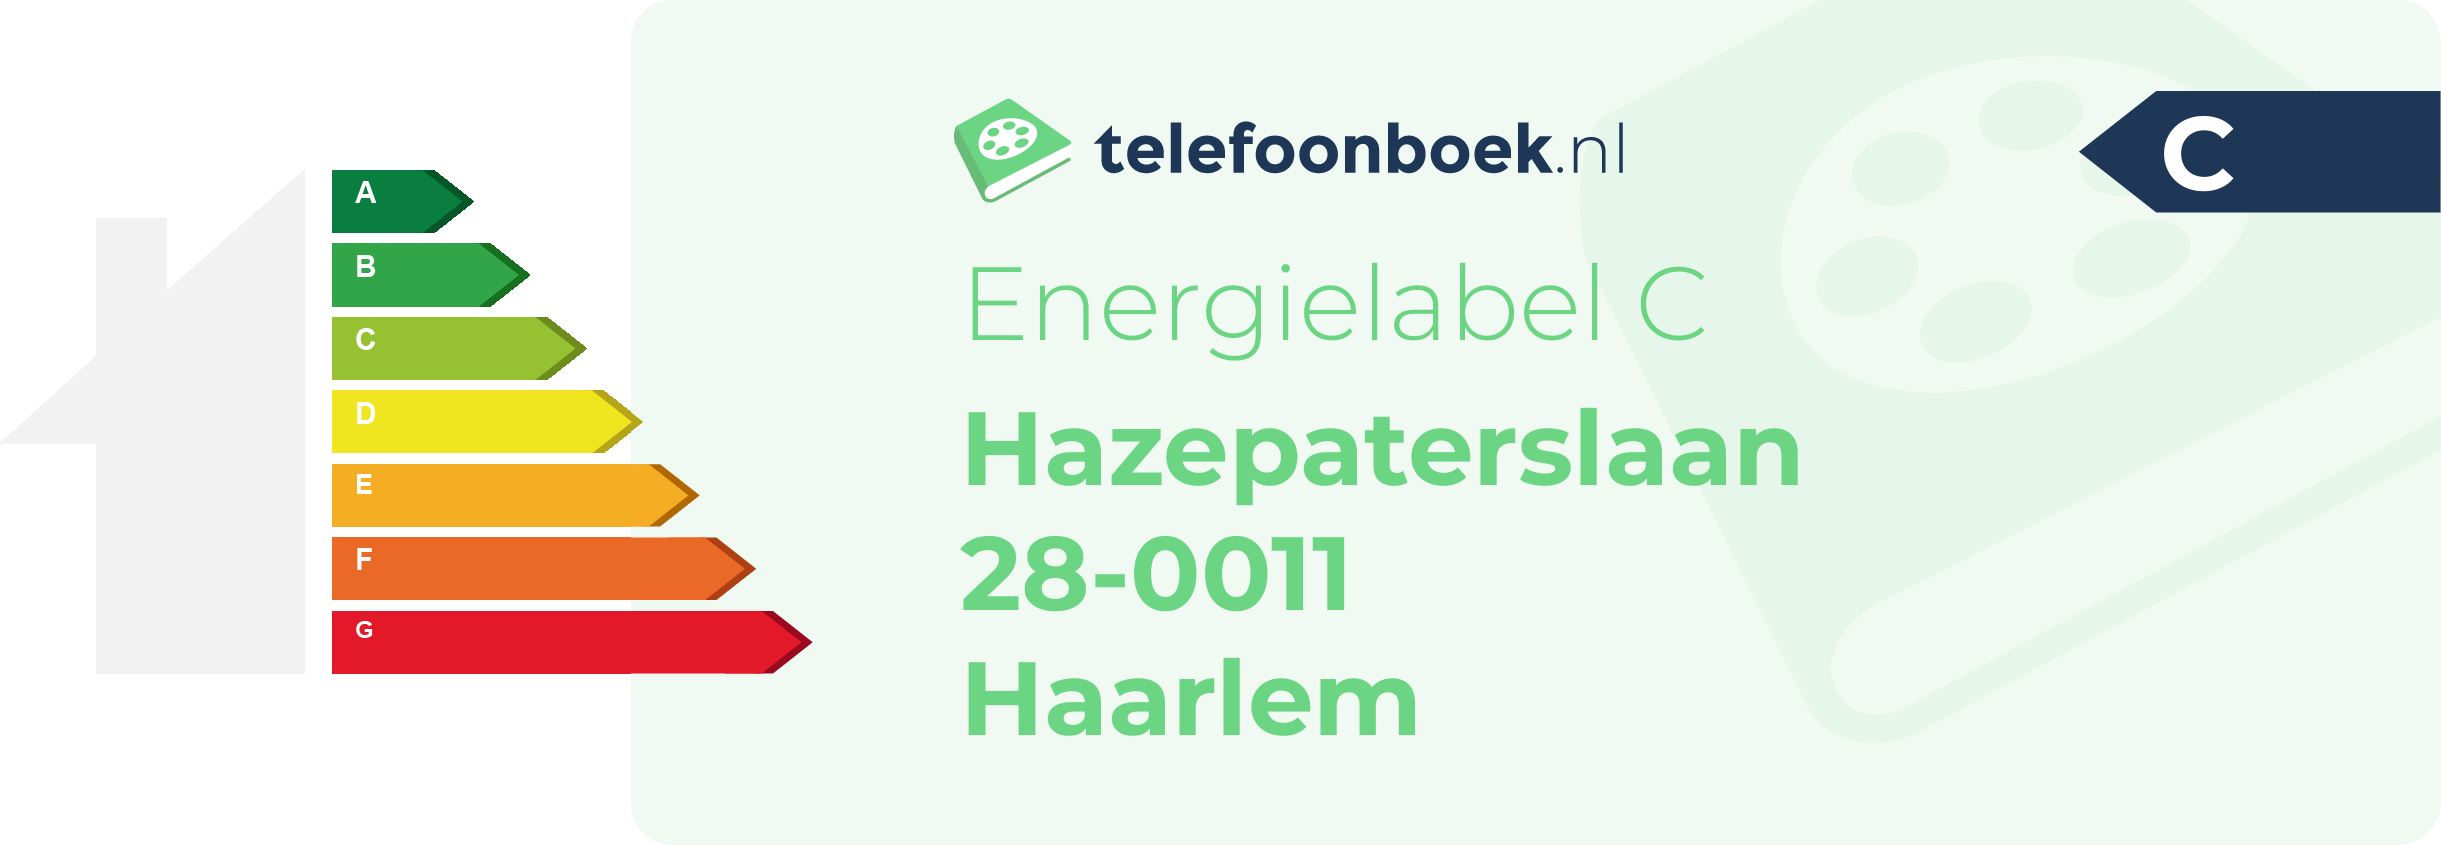 Energielabel Hazepaterslaan 28-0011 Haarlem